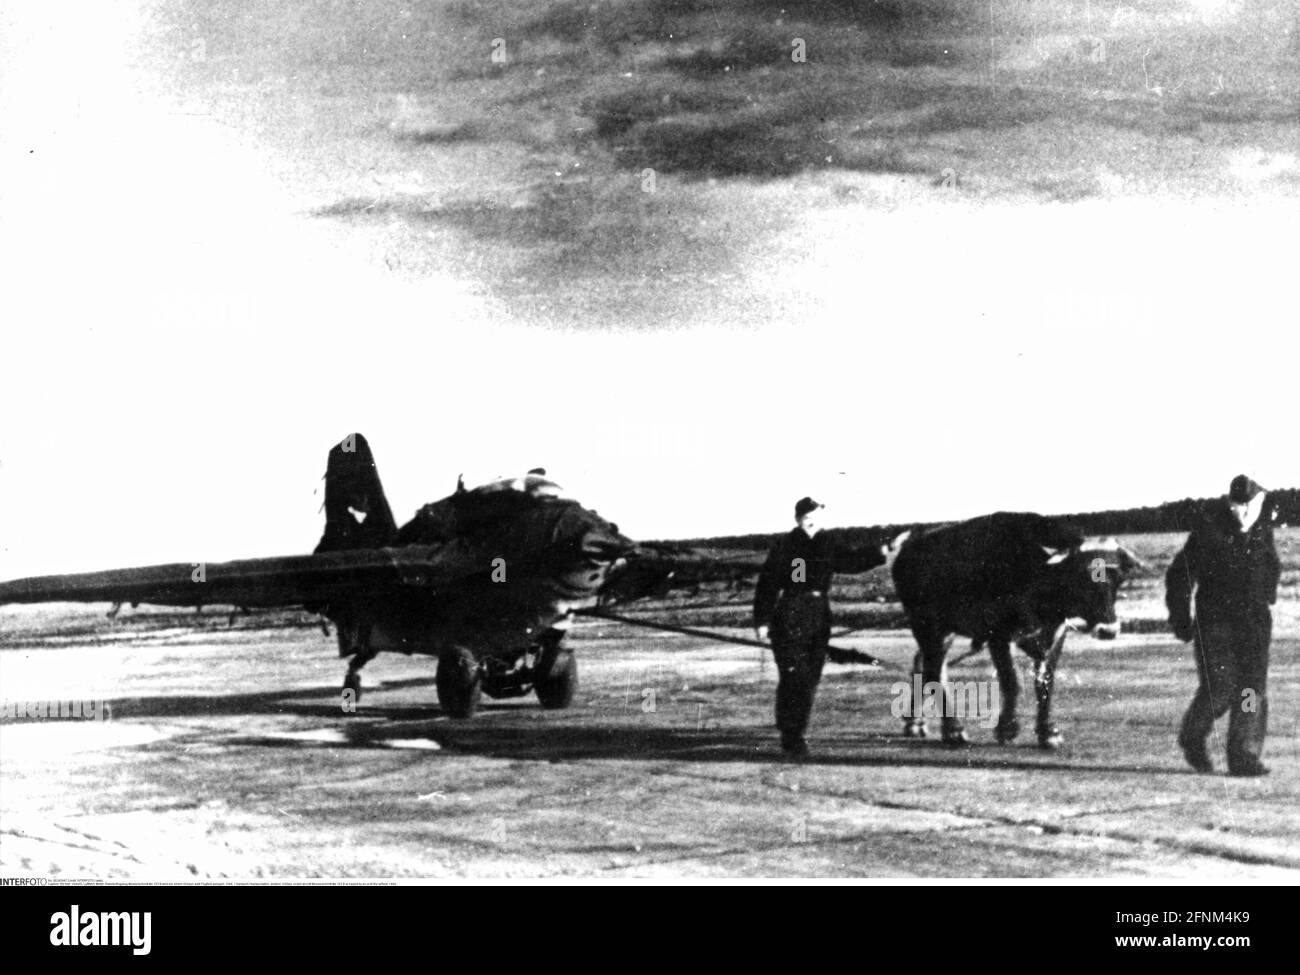 Transport / Transport, Luftfahrt, Militär, Raketenflugzeug Messerschmitt Me 163 B wird von einem Ochsen auf den Flugplatz gezogen, 1944, nur REDAKTIONELLE VERWENDUNG Stockfoto